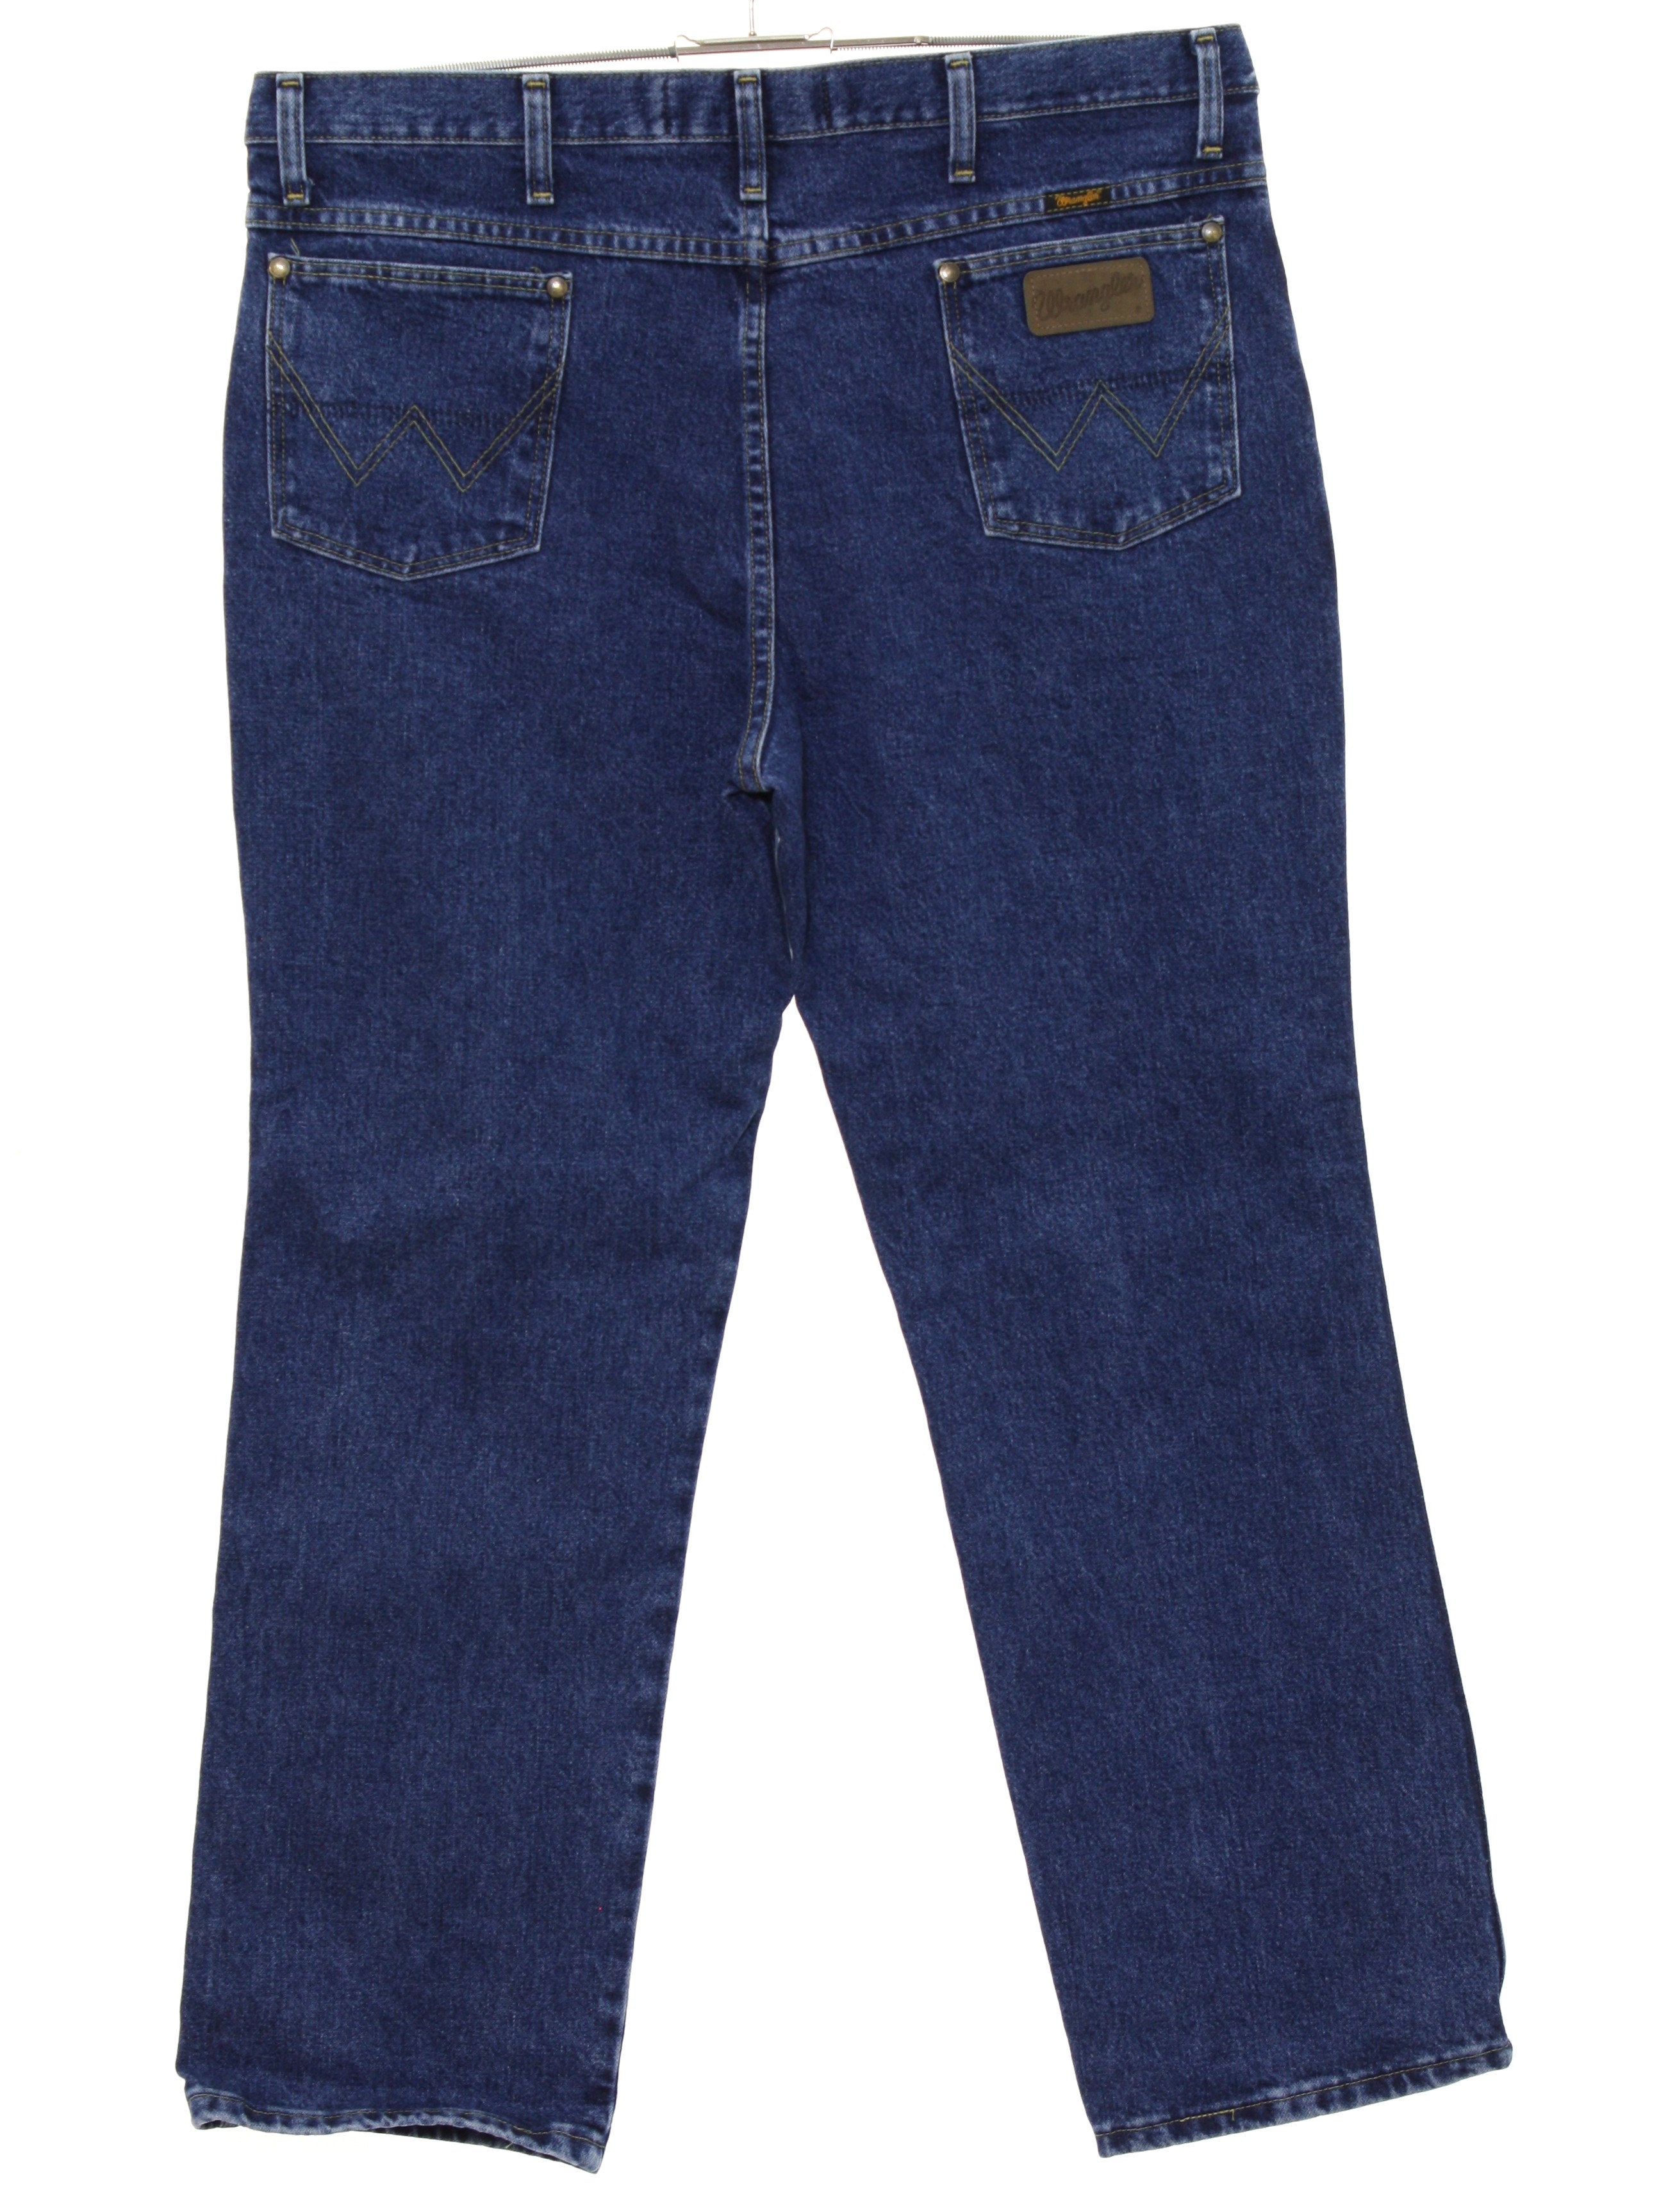 Nineties Vintage Pants: 90s or newer -Wrangler (George Strait)- Mens as ...